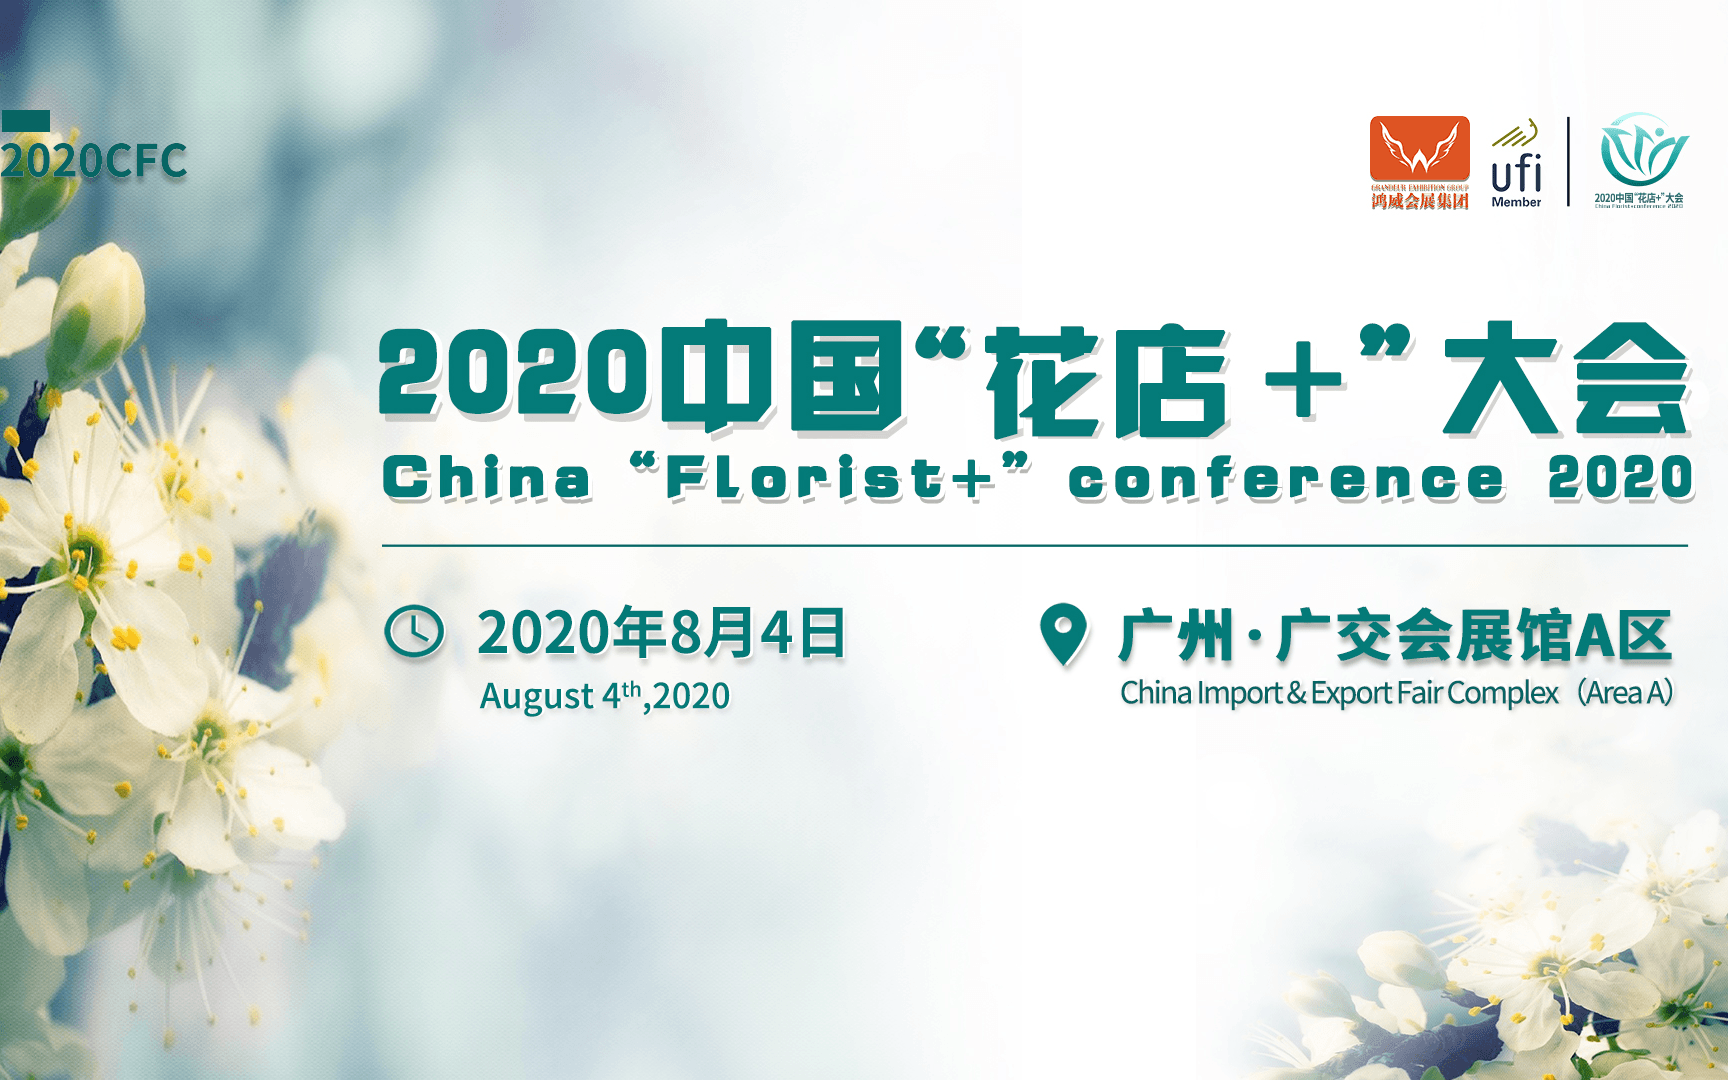 2020中国“花店+”大会